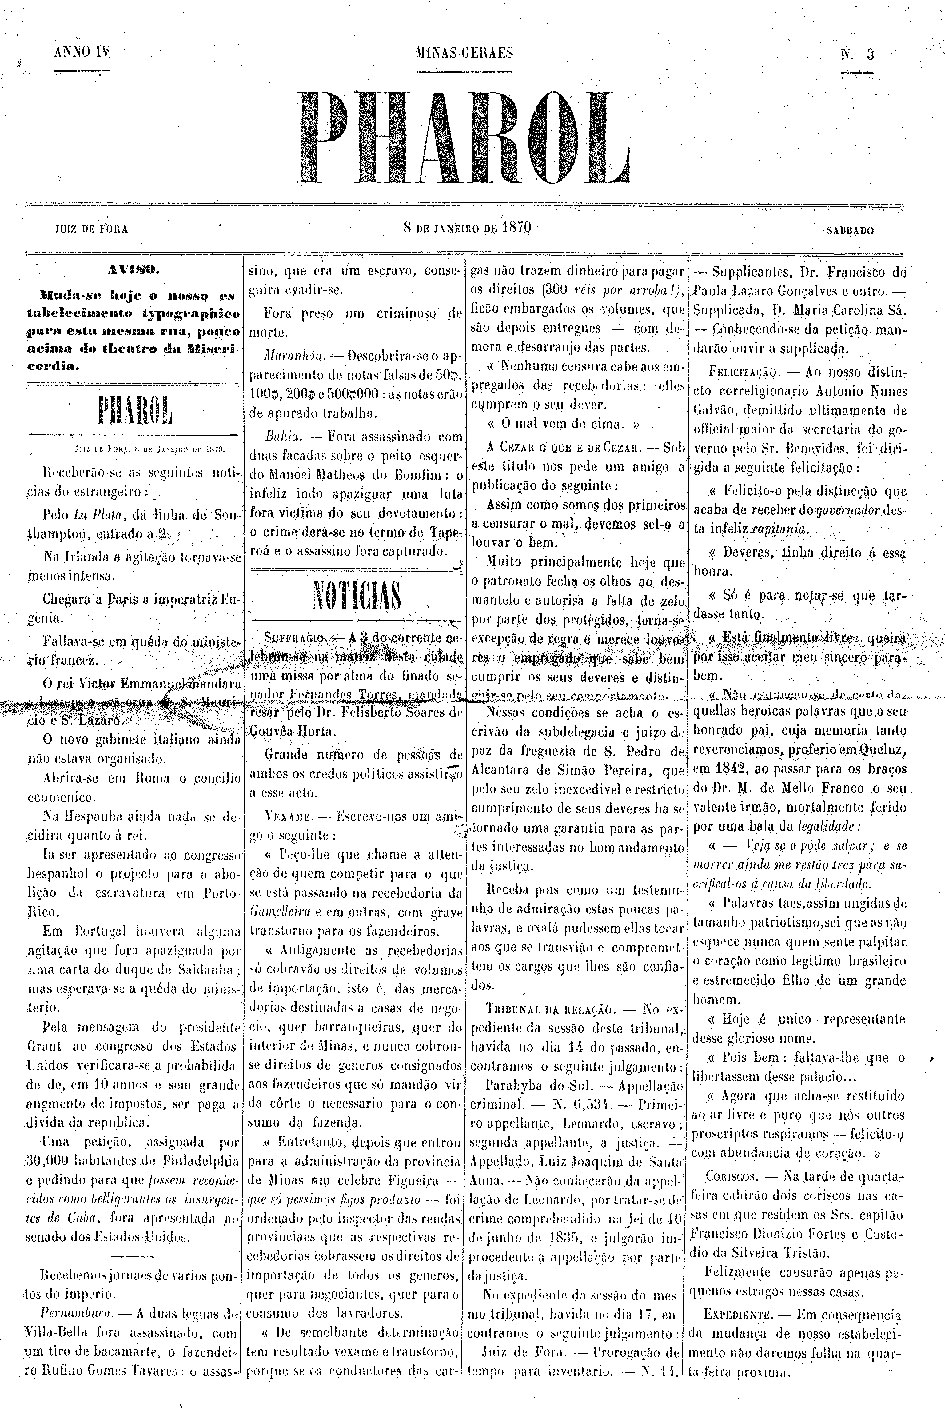 Portal de Notcias PJF | Arquivo Histrico armazena exemplar  mais antigo do jornal O Pharol | SARH - 5/4/2005